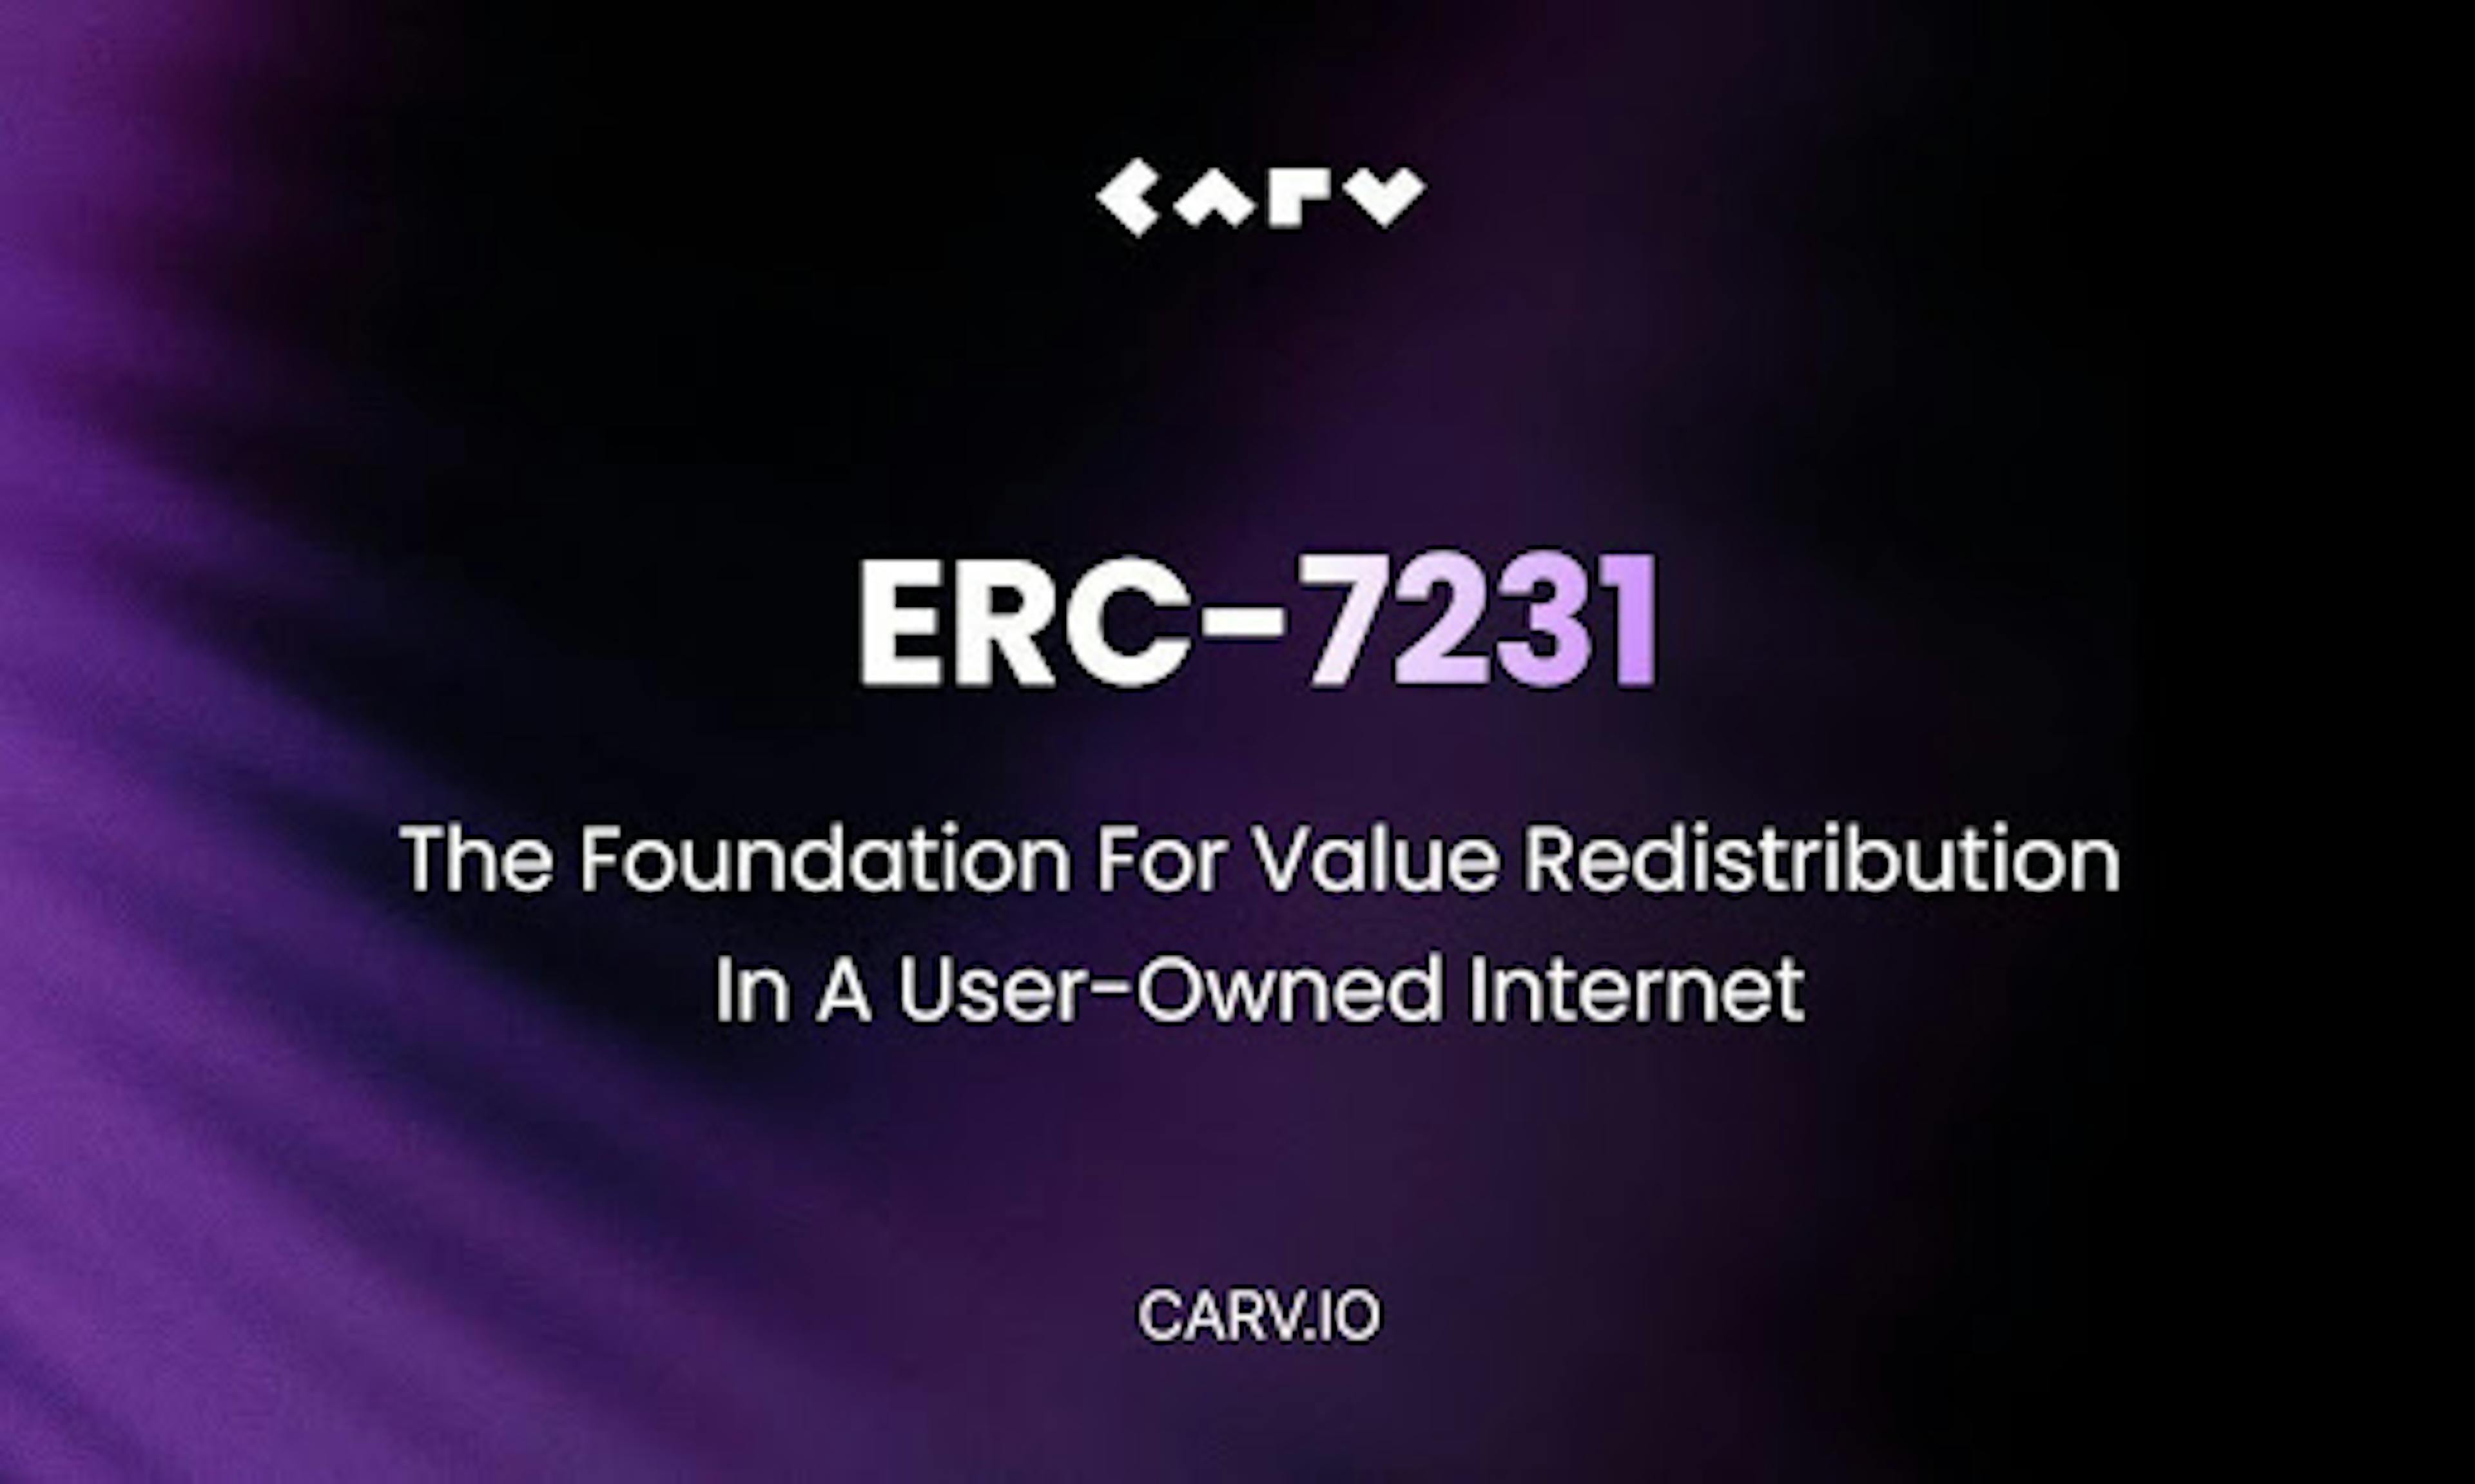 /es/la-comunidad-ethereum-respalda-el-estandar-carvs-nft-para-la-redistribucion-de-valor-de-los-usuarios-en-la-revolucion-ai feature image